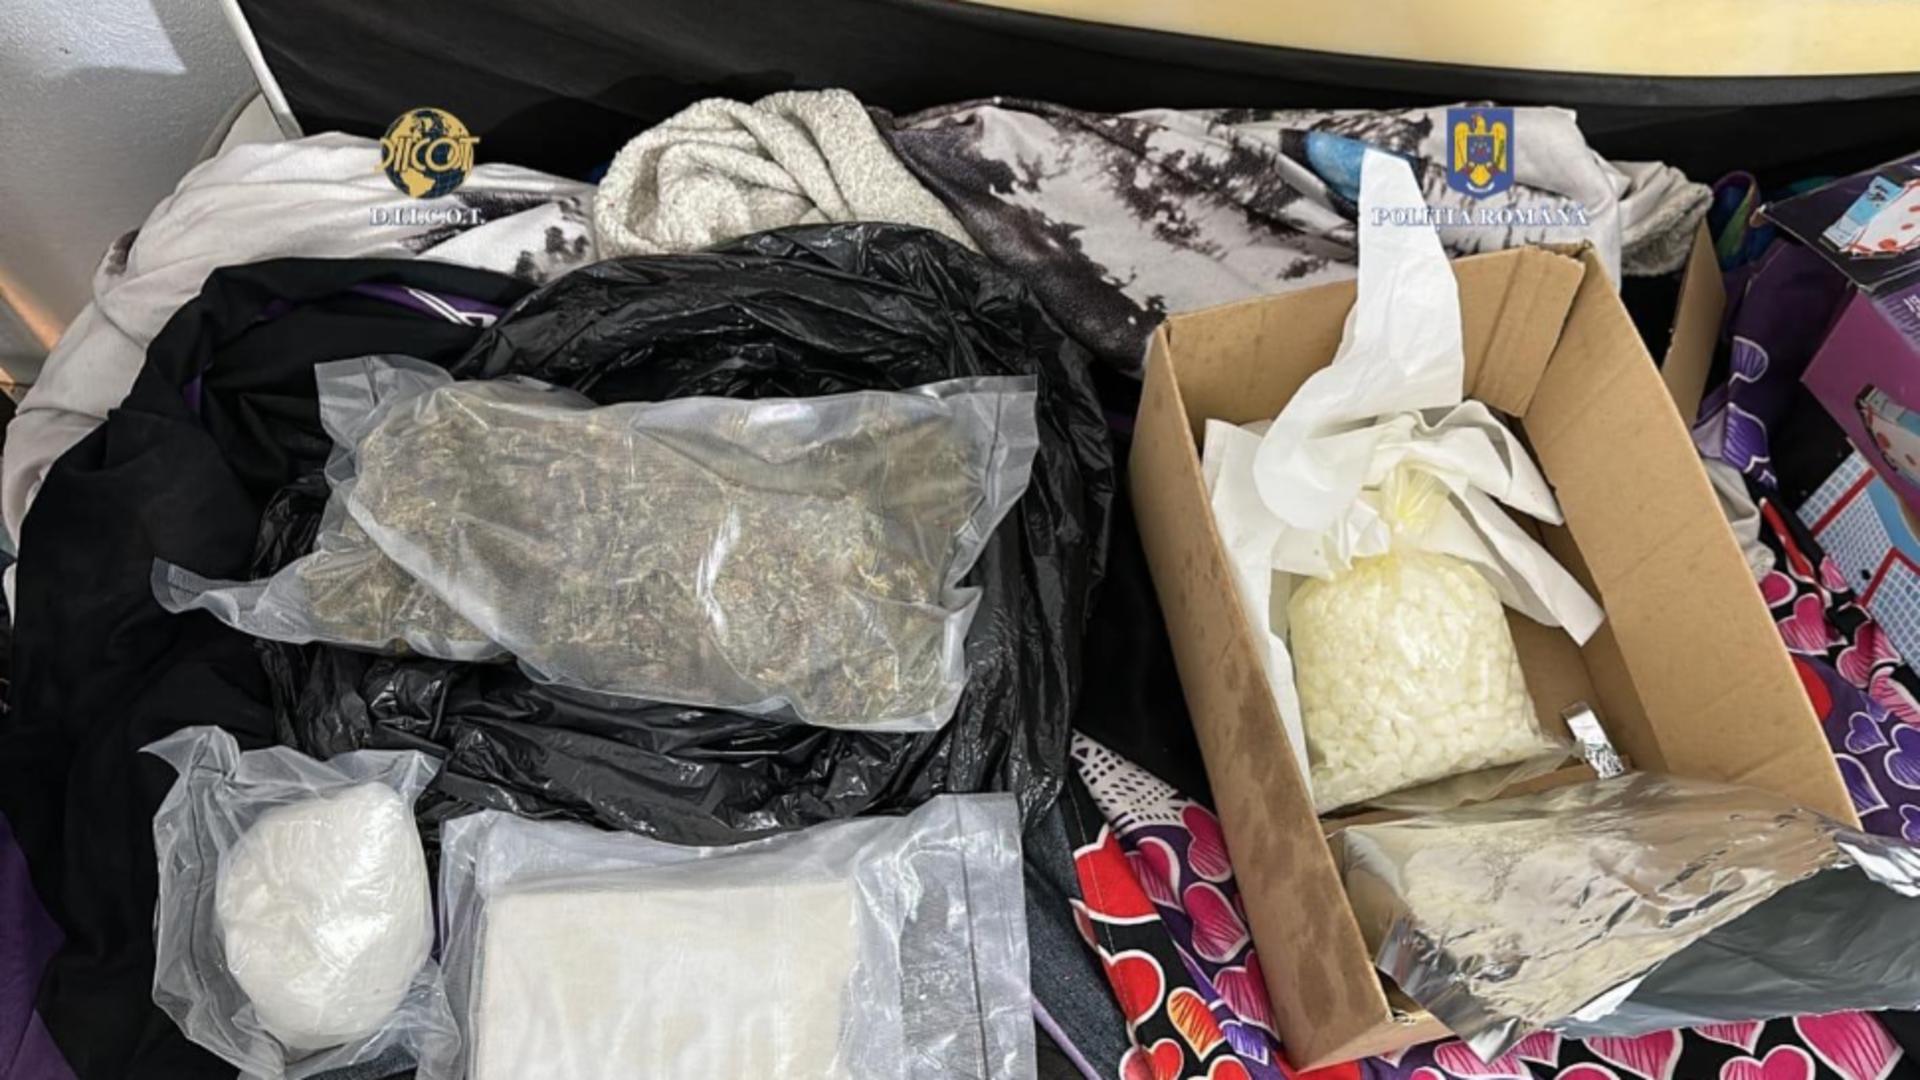 Bărbat, prins în timp ce transporta droguri de mare risc! Stupefiantele urmau să fie vândute pe stradă – Percheziții în 3 județe ale țării